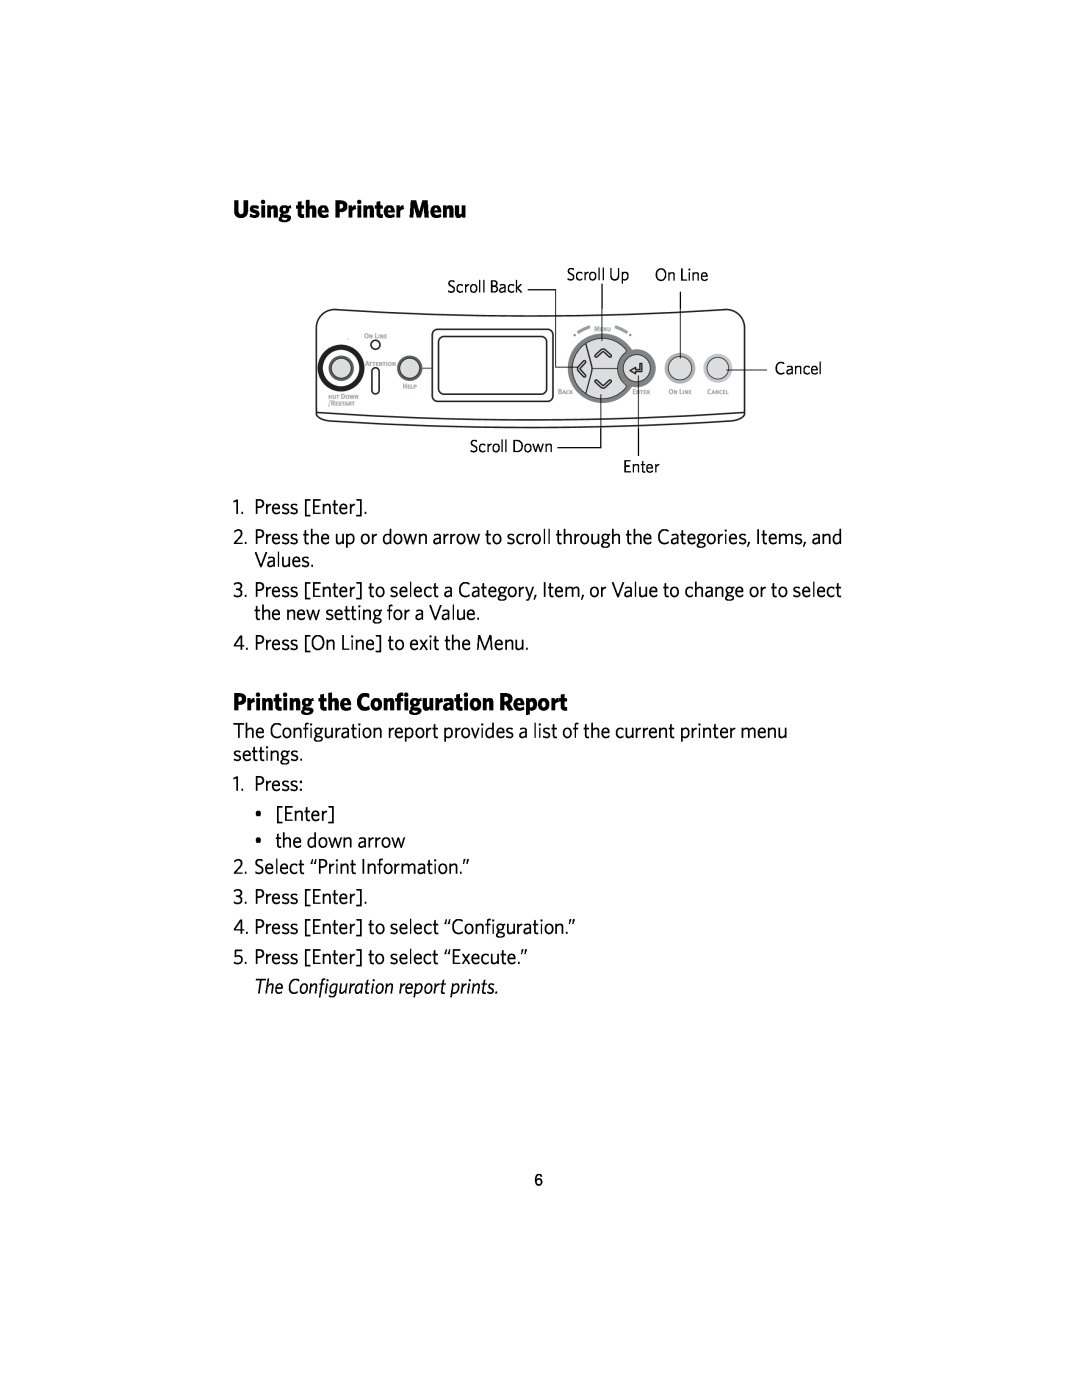 Kodak DL2100 manual Using the Printer Menu, Printing the Configuration Report 